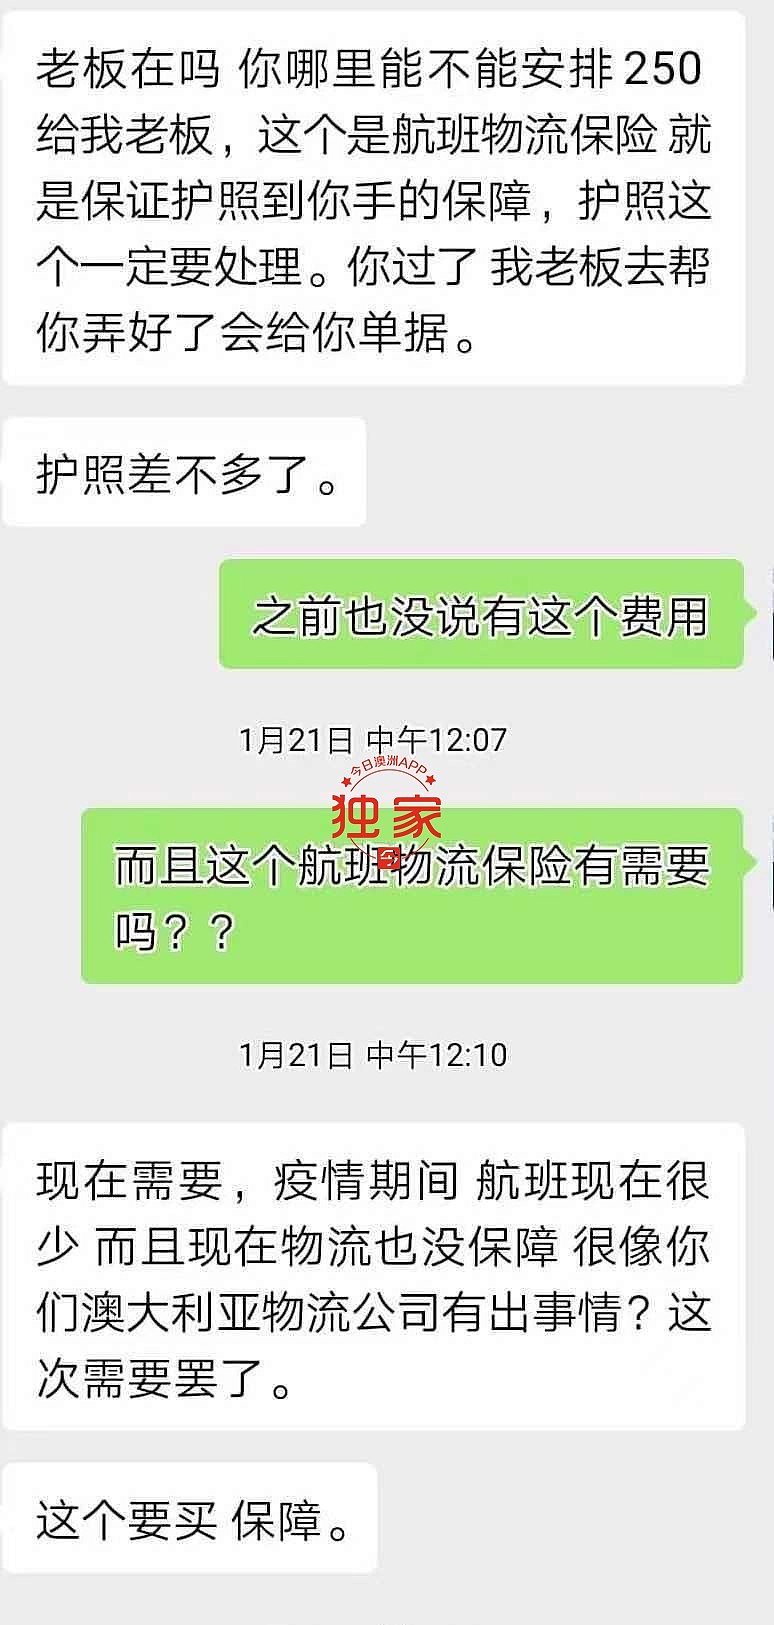 WeChat Image_20210417015330.jpg,12